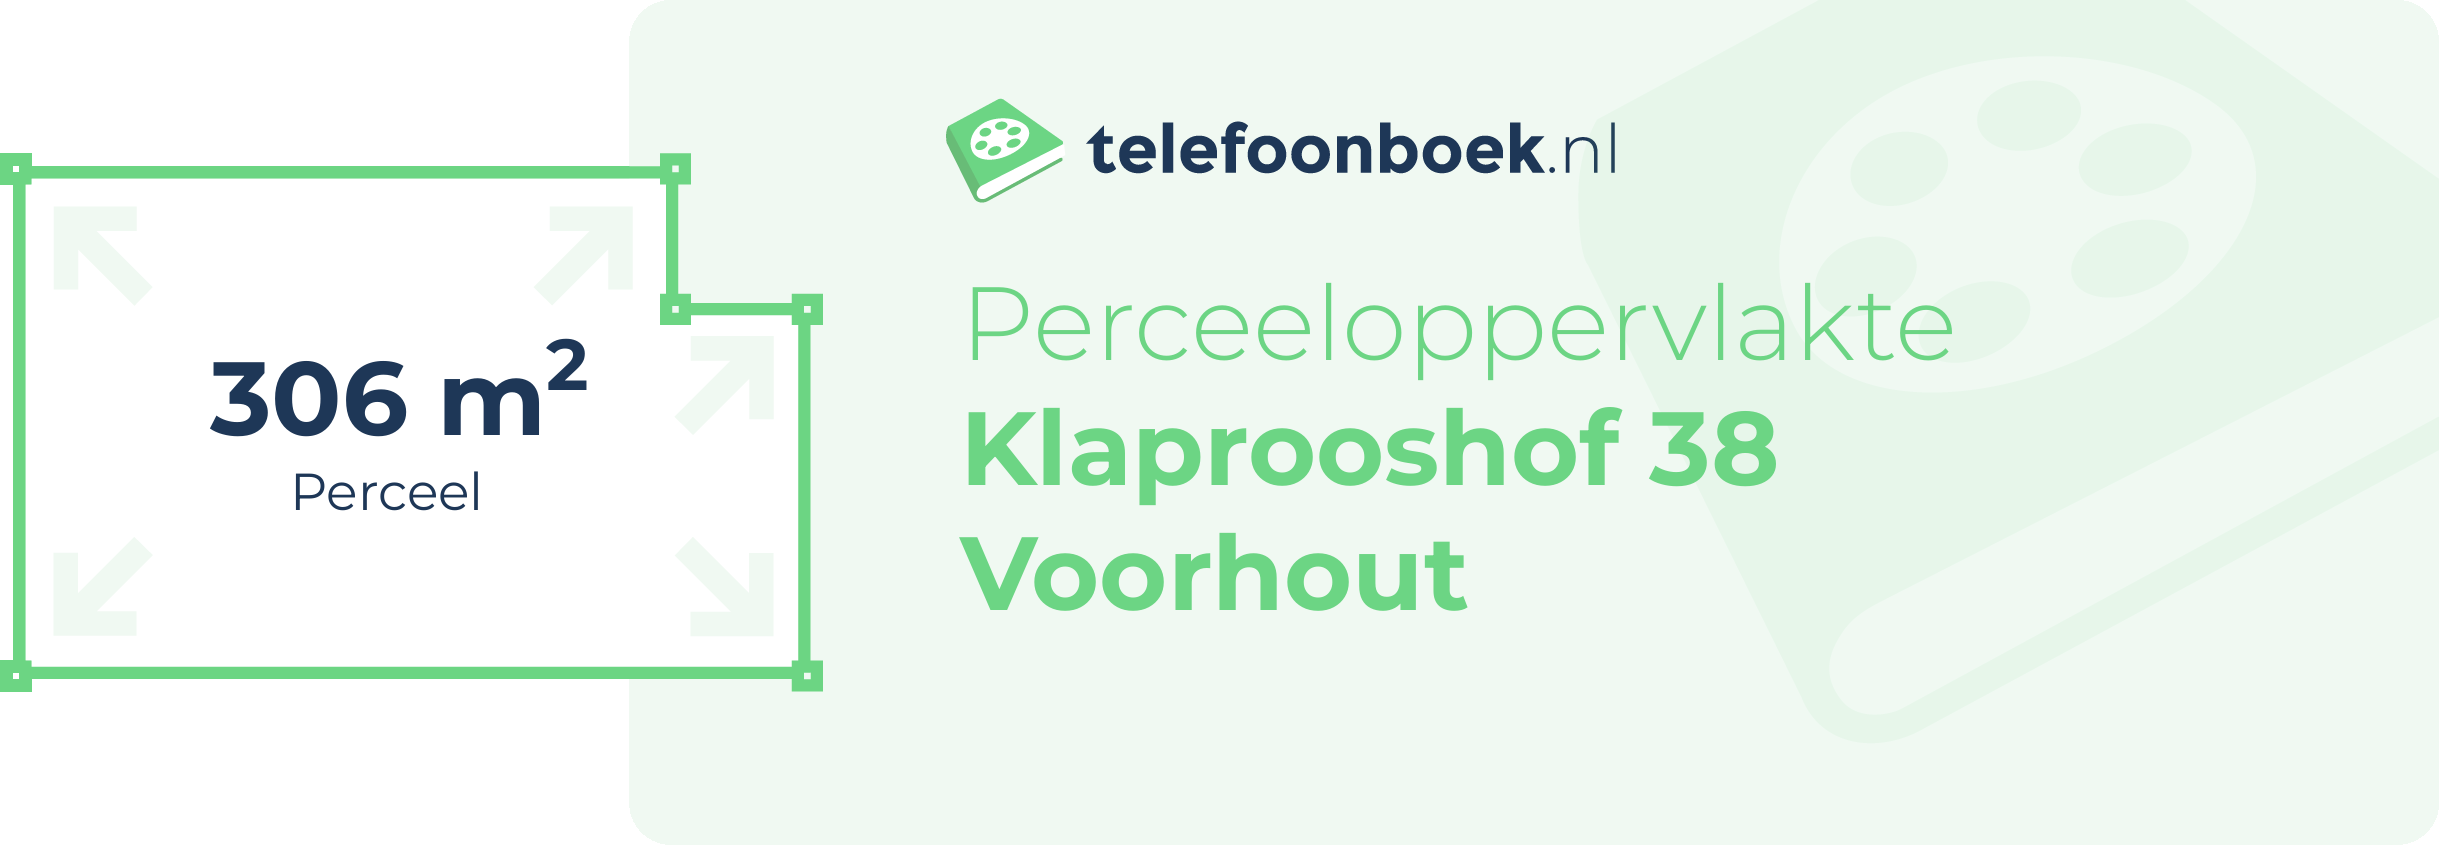 Perceeloppervlakte Klaprooshof 38 Voorhout